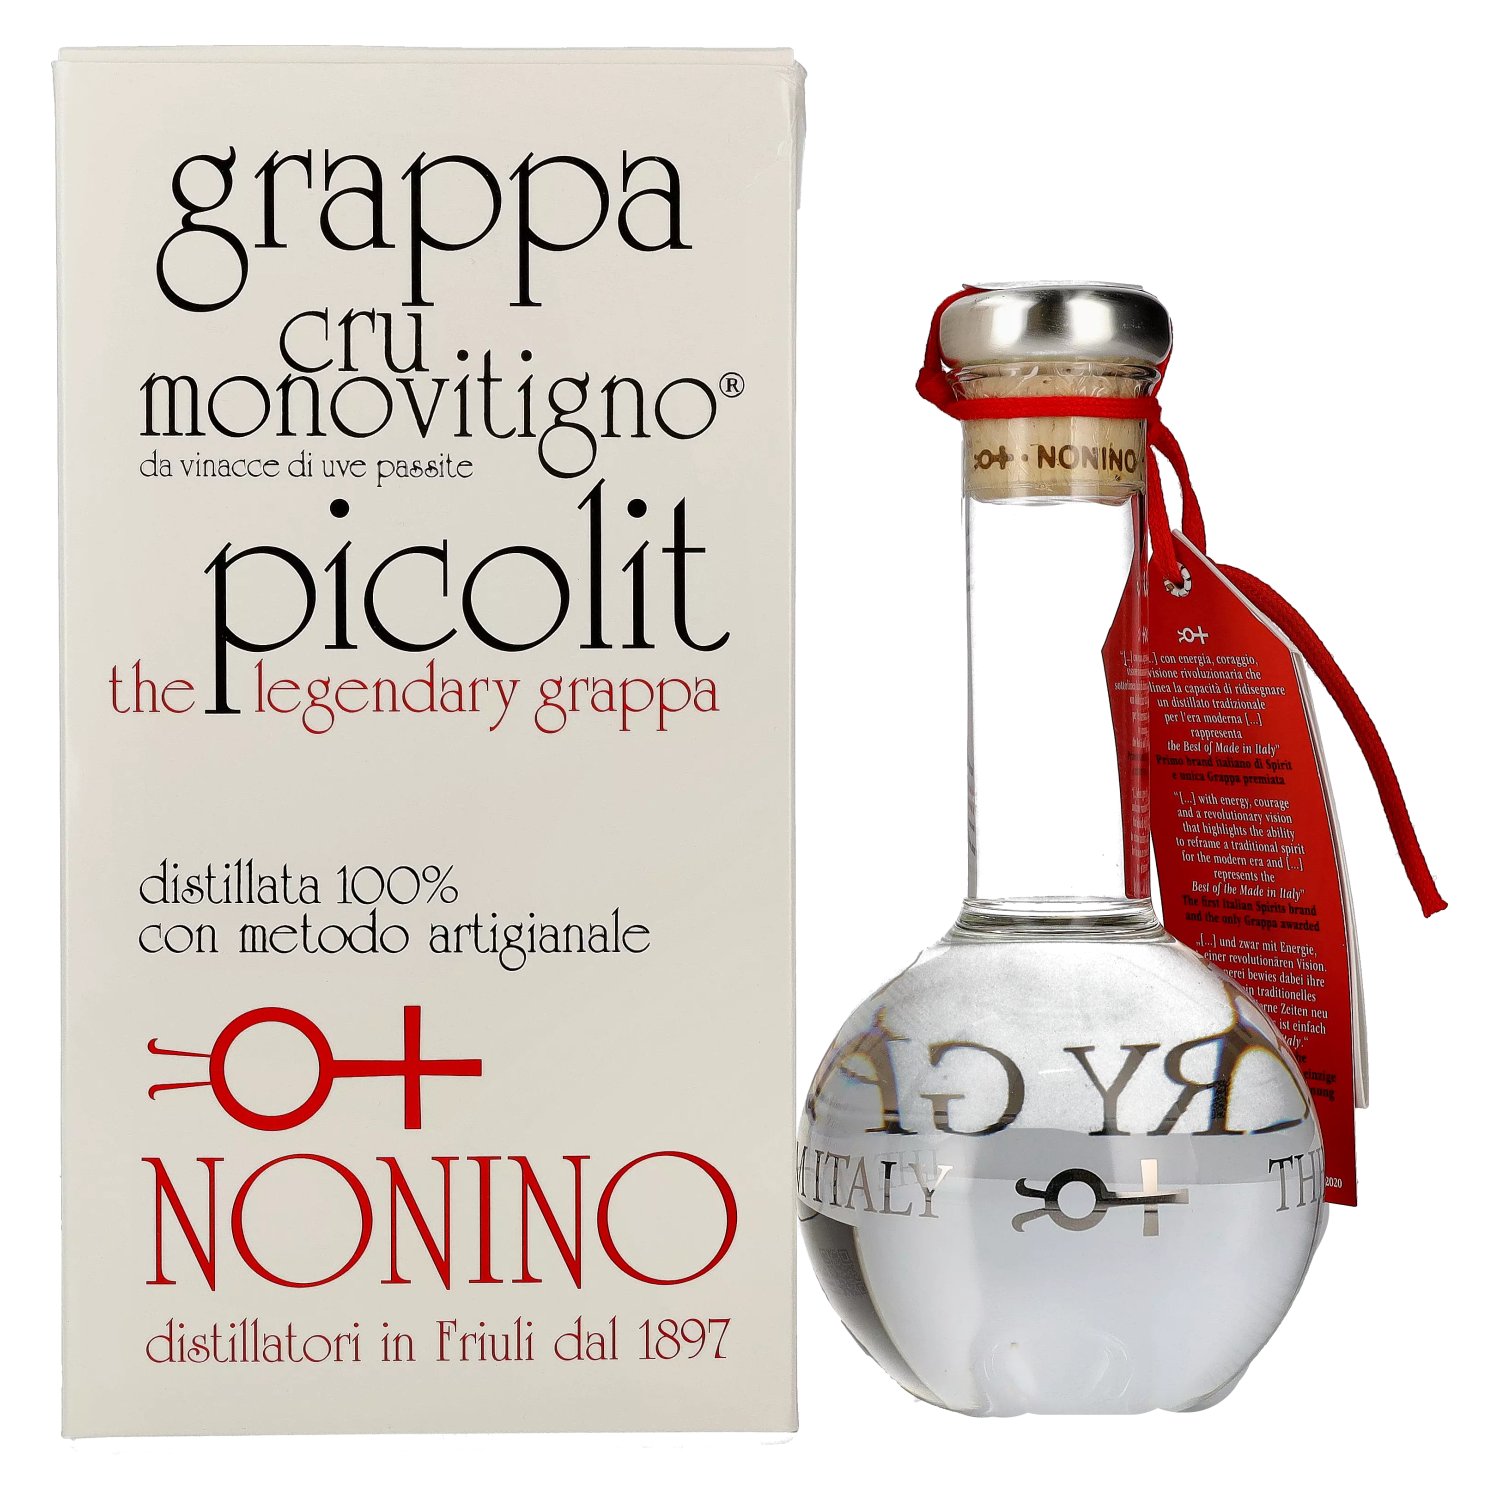 Nonino Grappa The Legendary Cru Monovitigno Picolit 50% Vol. 0,5l in Giftbox